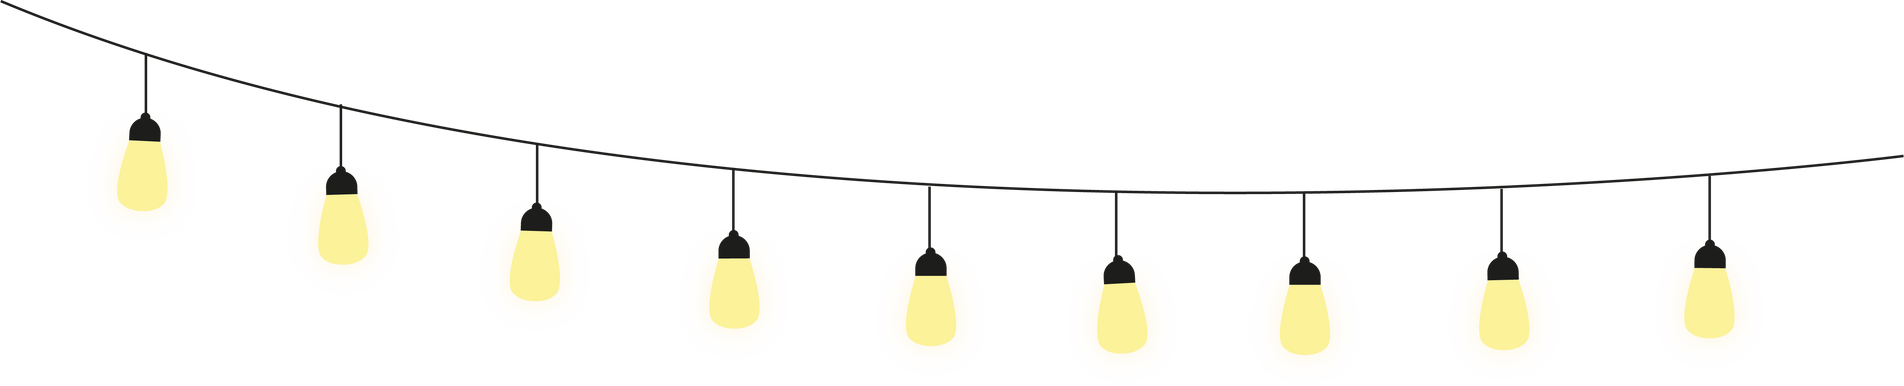 lights decoration hanging string lights bulb lights